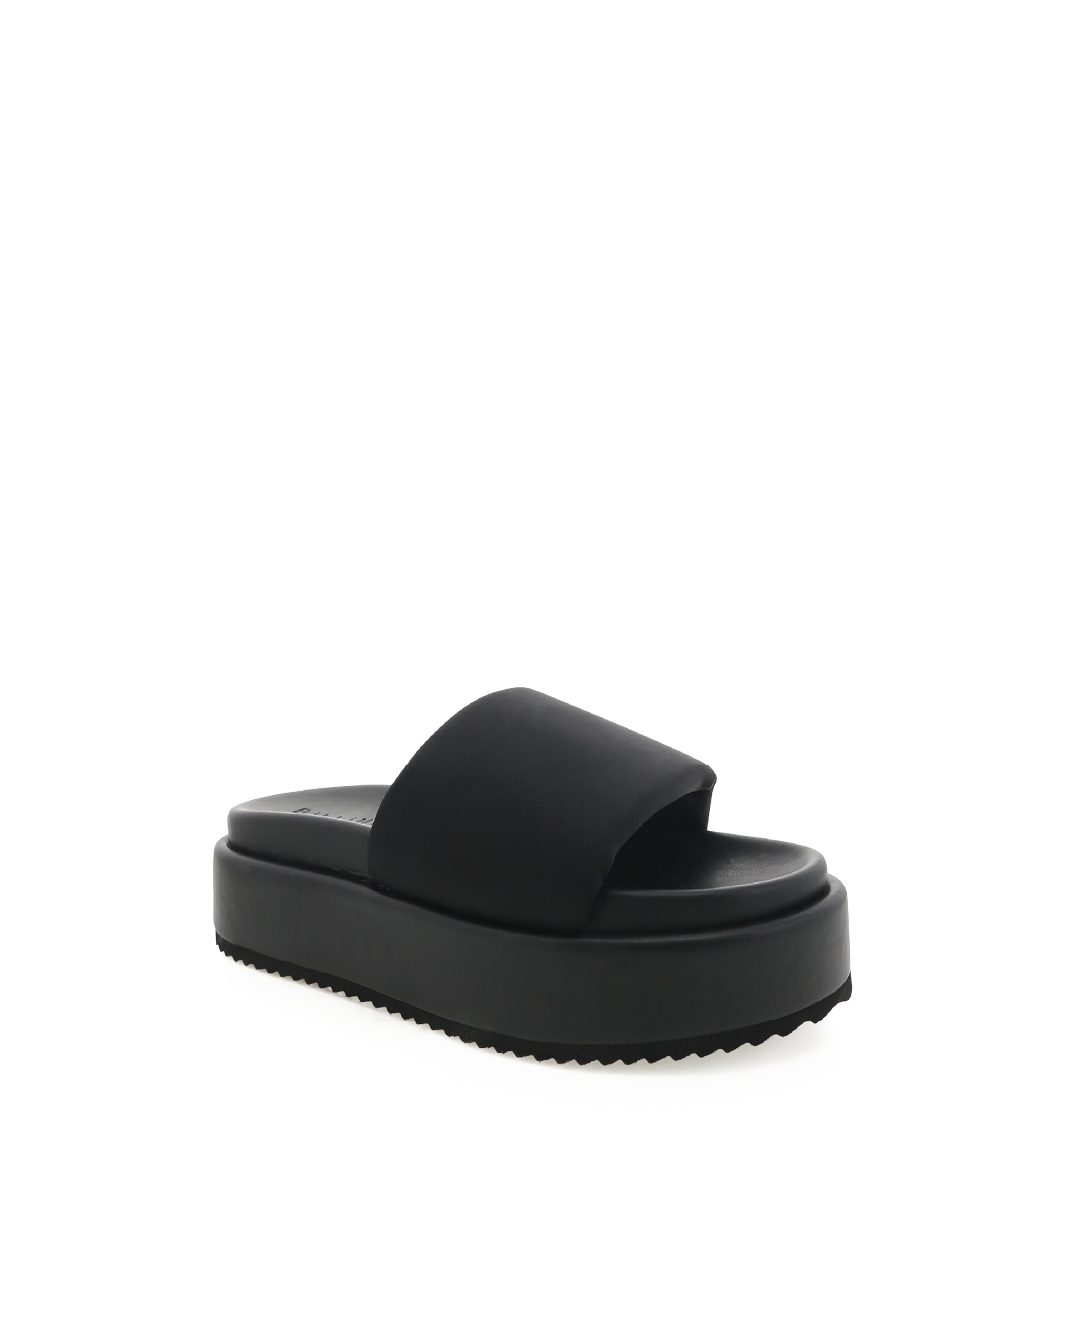 GLORIA - BLACK NEOPRENE-Sandals-Billini-BILLINI USA